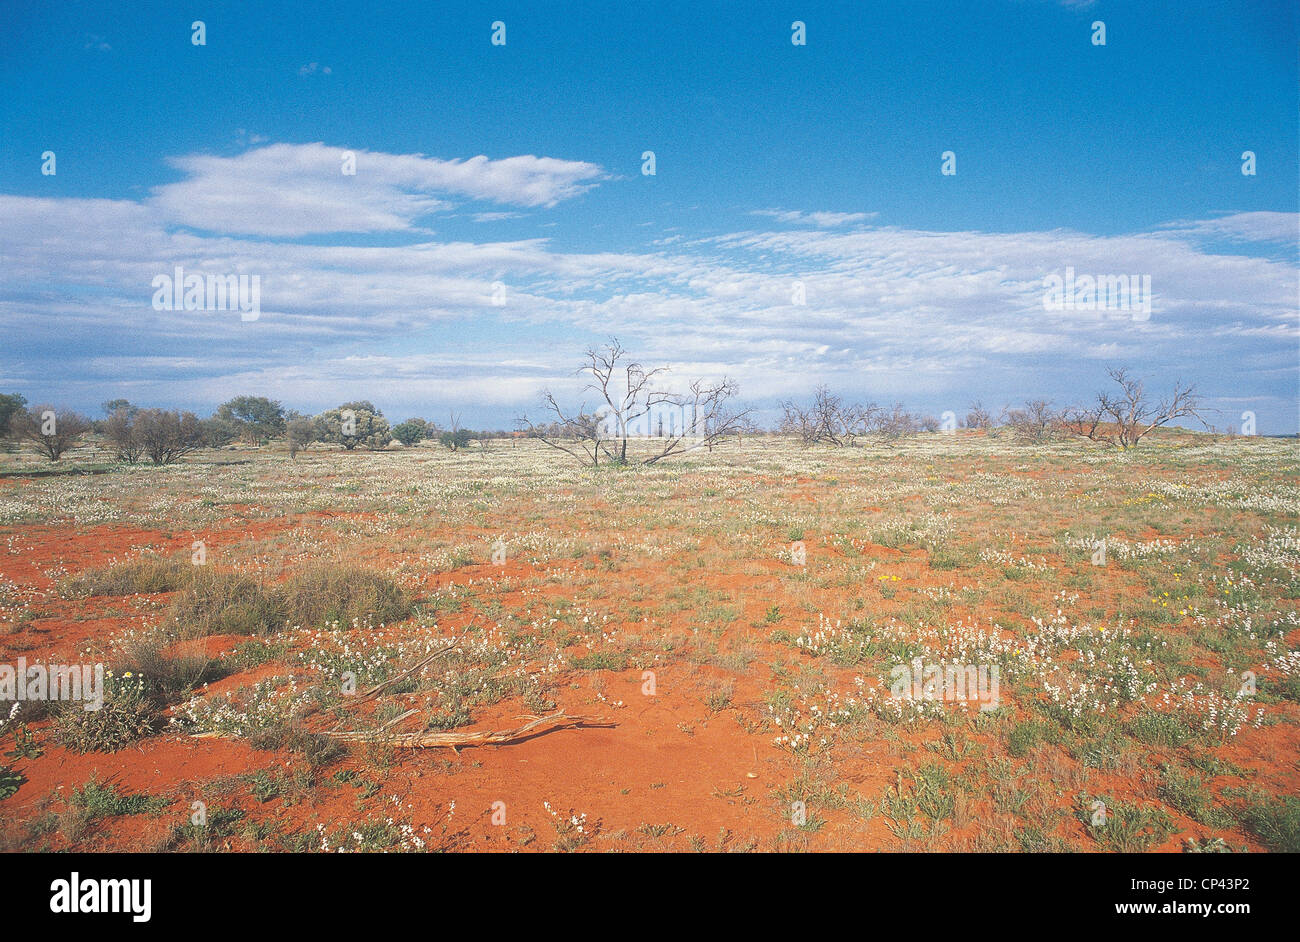 Пустыня Гибсона в Австралии. Пустыня Гибсона. Пустыня Гибсона Западная Австралия. Фото Австралия Desert after the Rain. Пустыня гибсона австралия